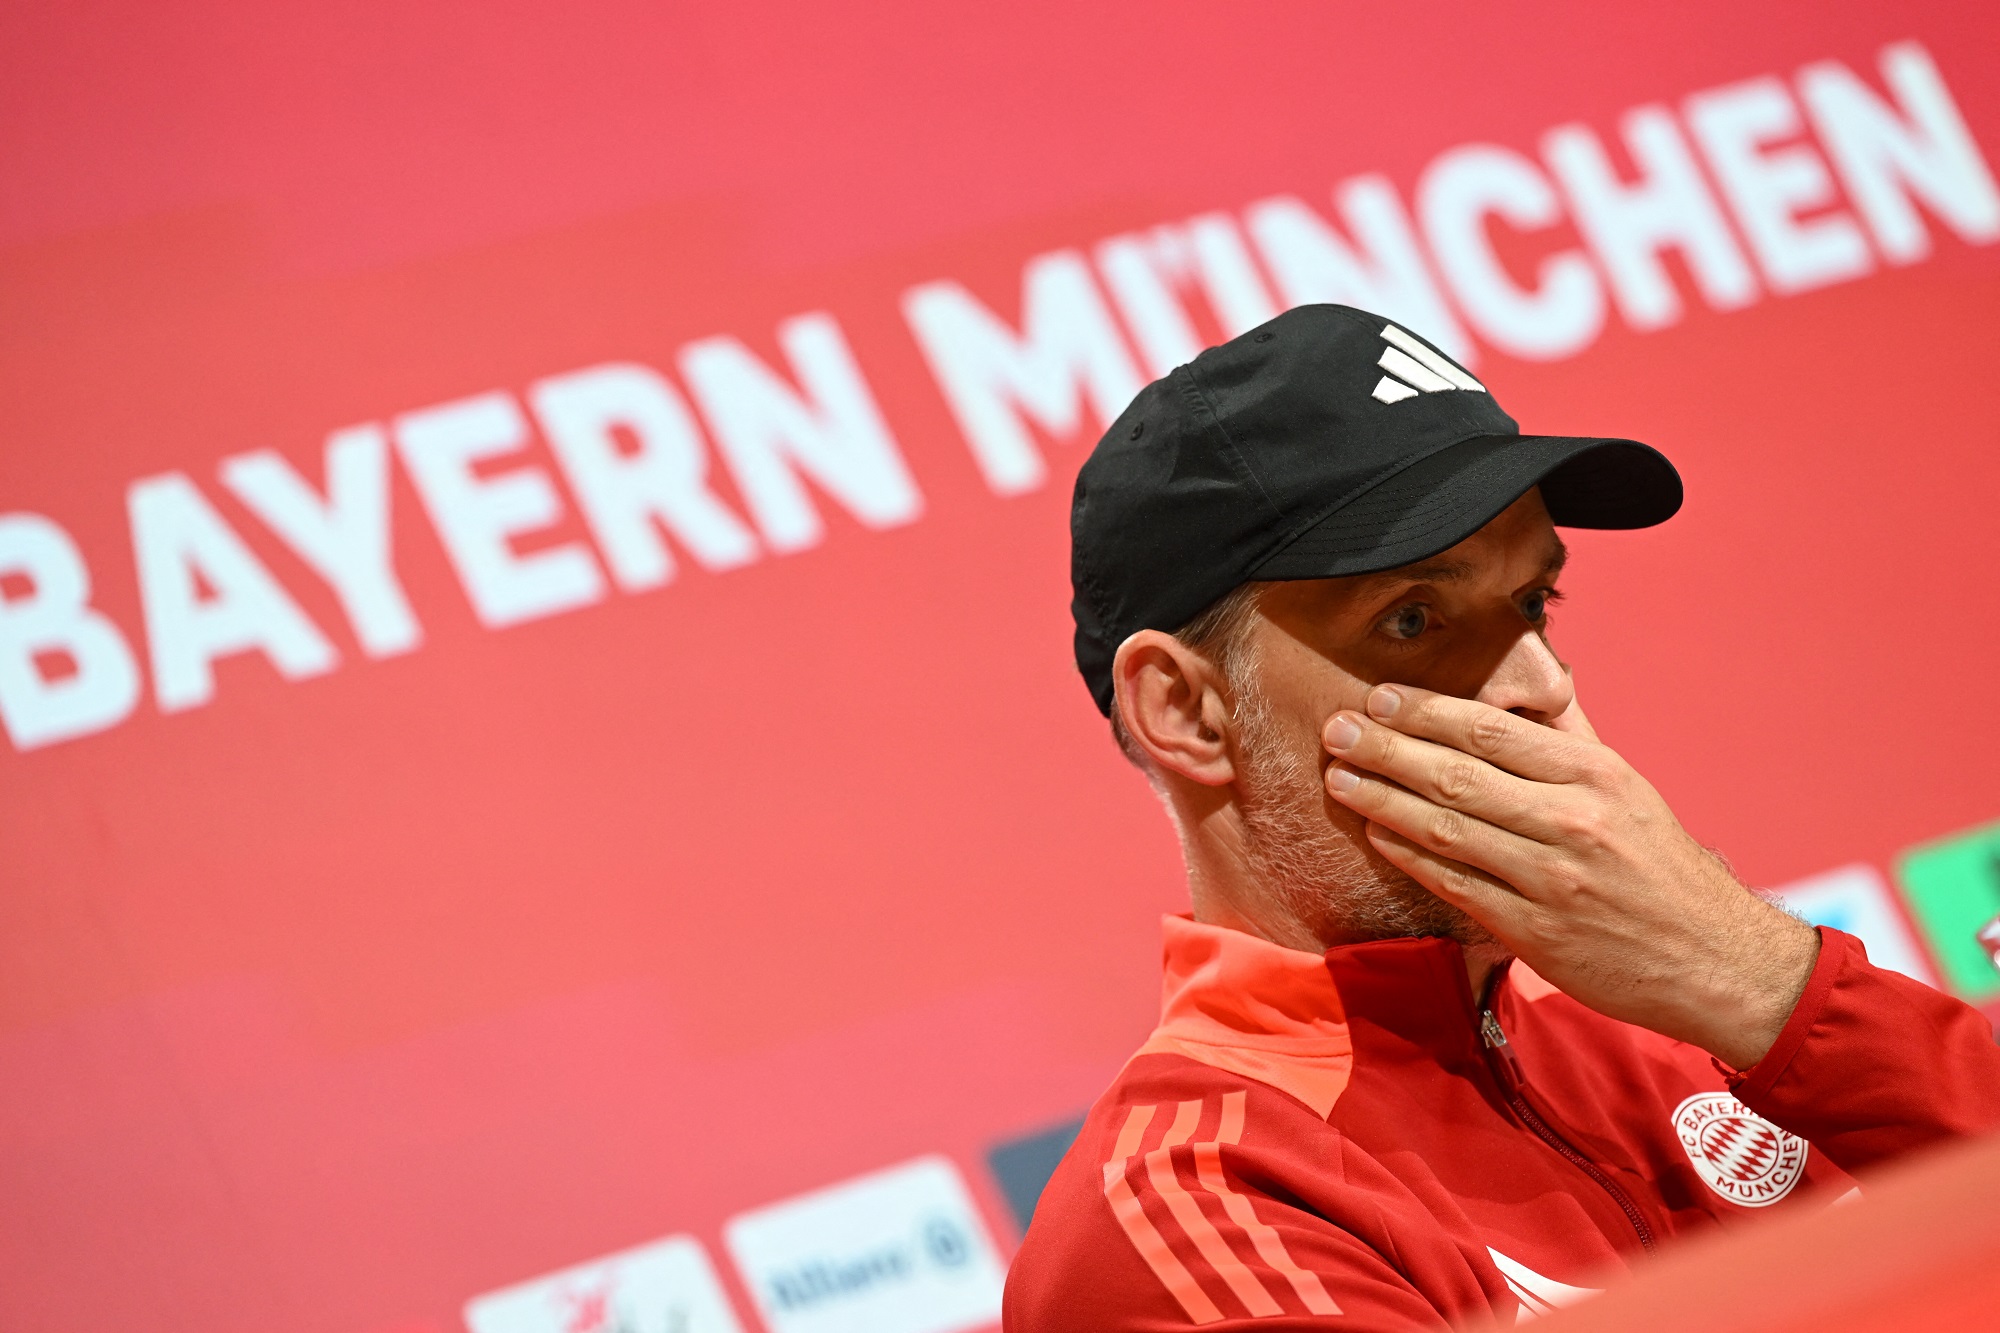 Munich coach Thomas Tuchel